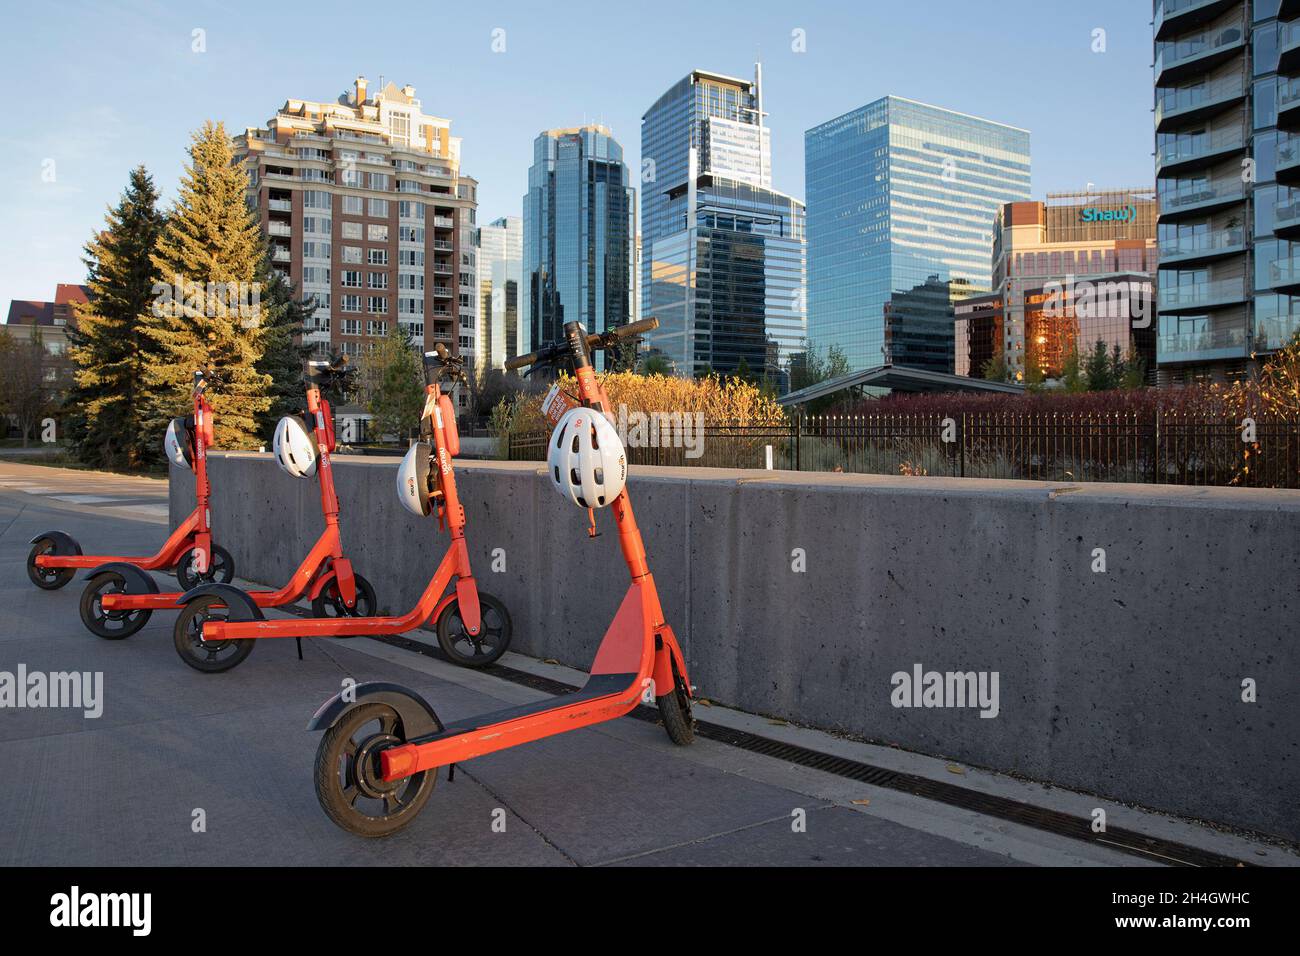 Reihe von gemeinsam genutzten E-Scootern zur Miete in der Innenstadt, mit dem weltweit ersten App-gesteuerten Helmschloss, das bei jeder Vermietung einen Schutzhelm bietet. Stockfoto